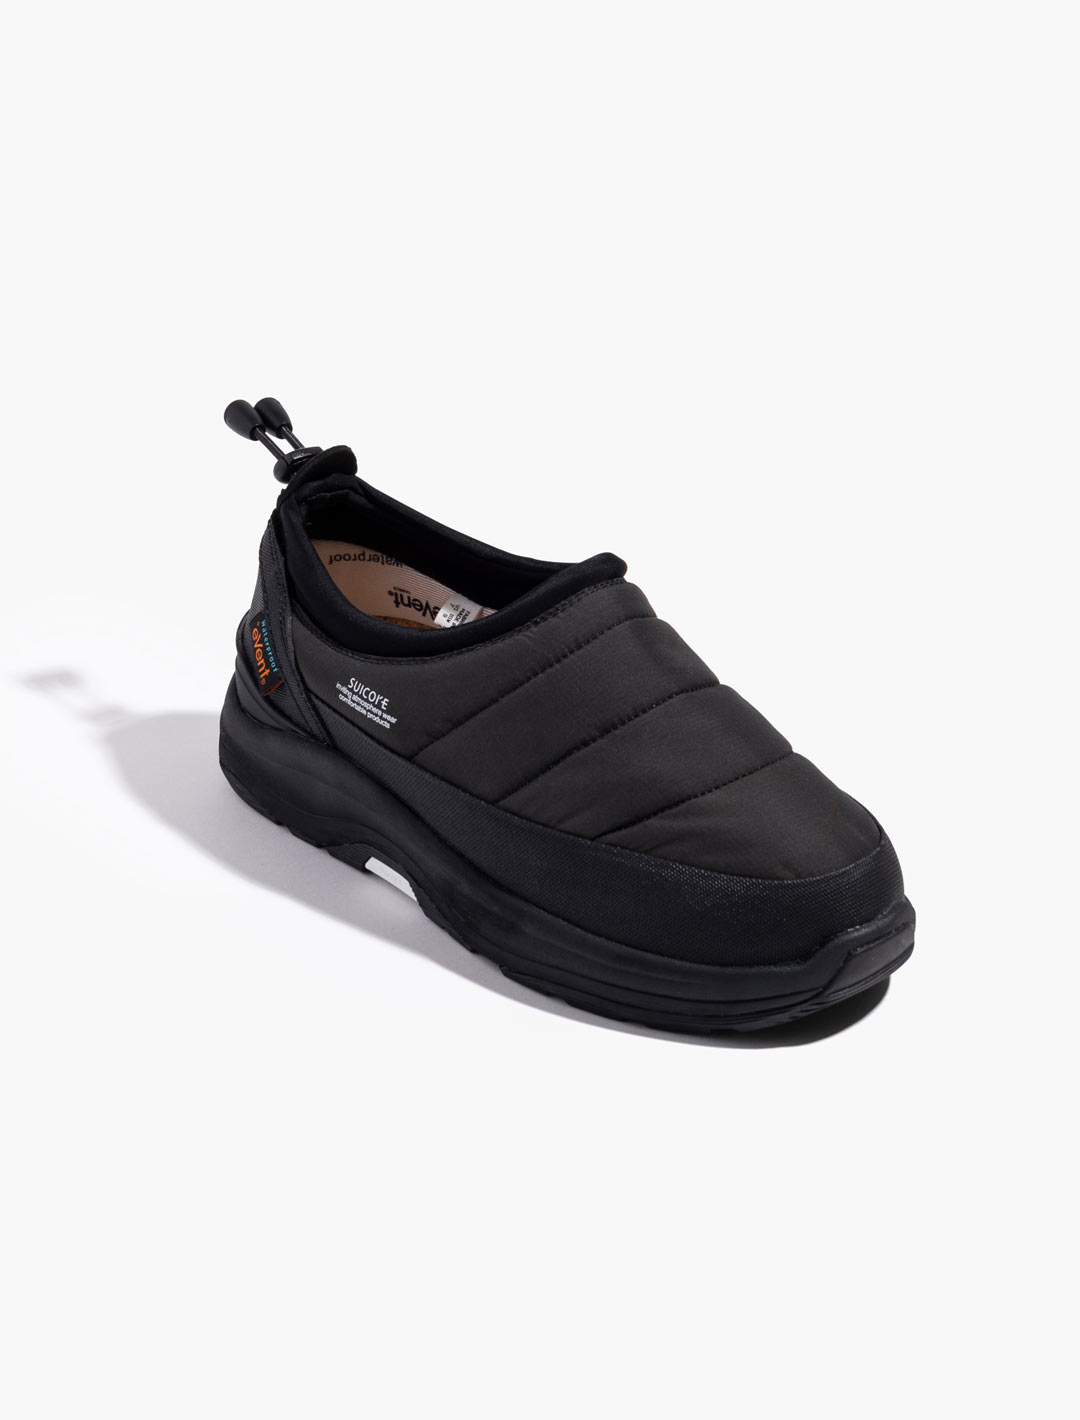 PEPPER Slip-on Shoes - Black